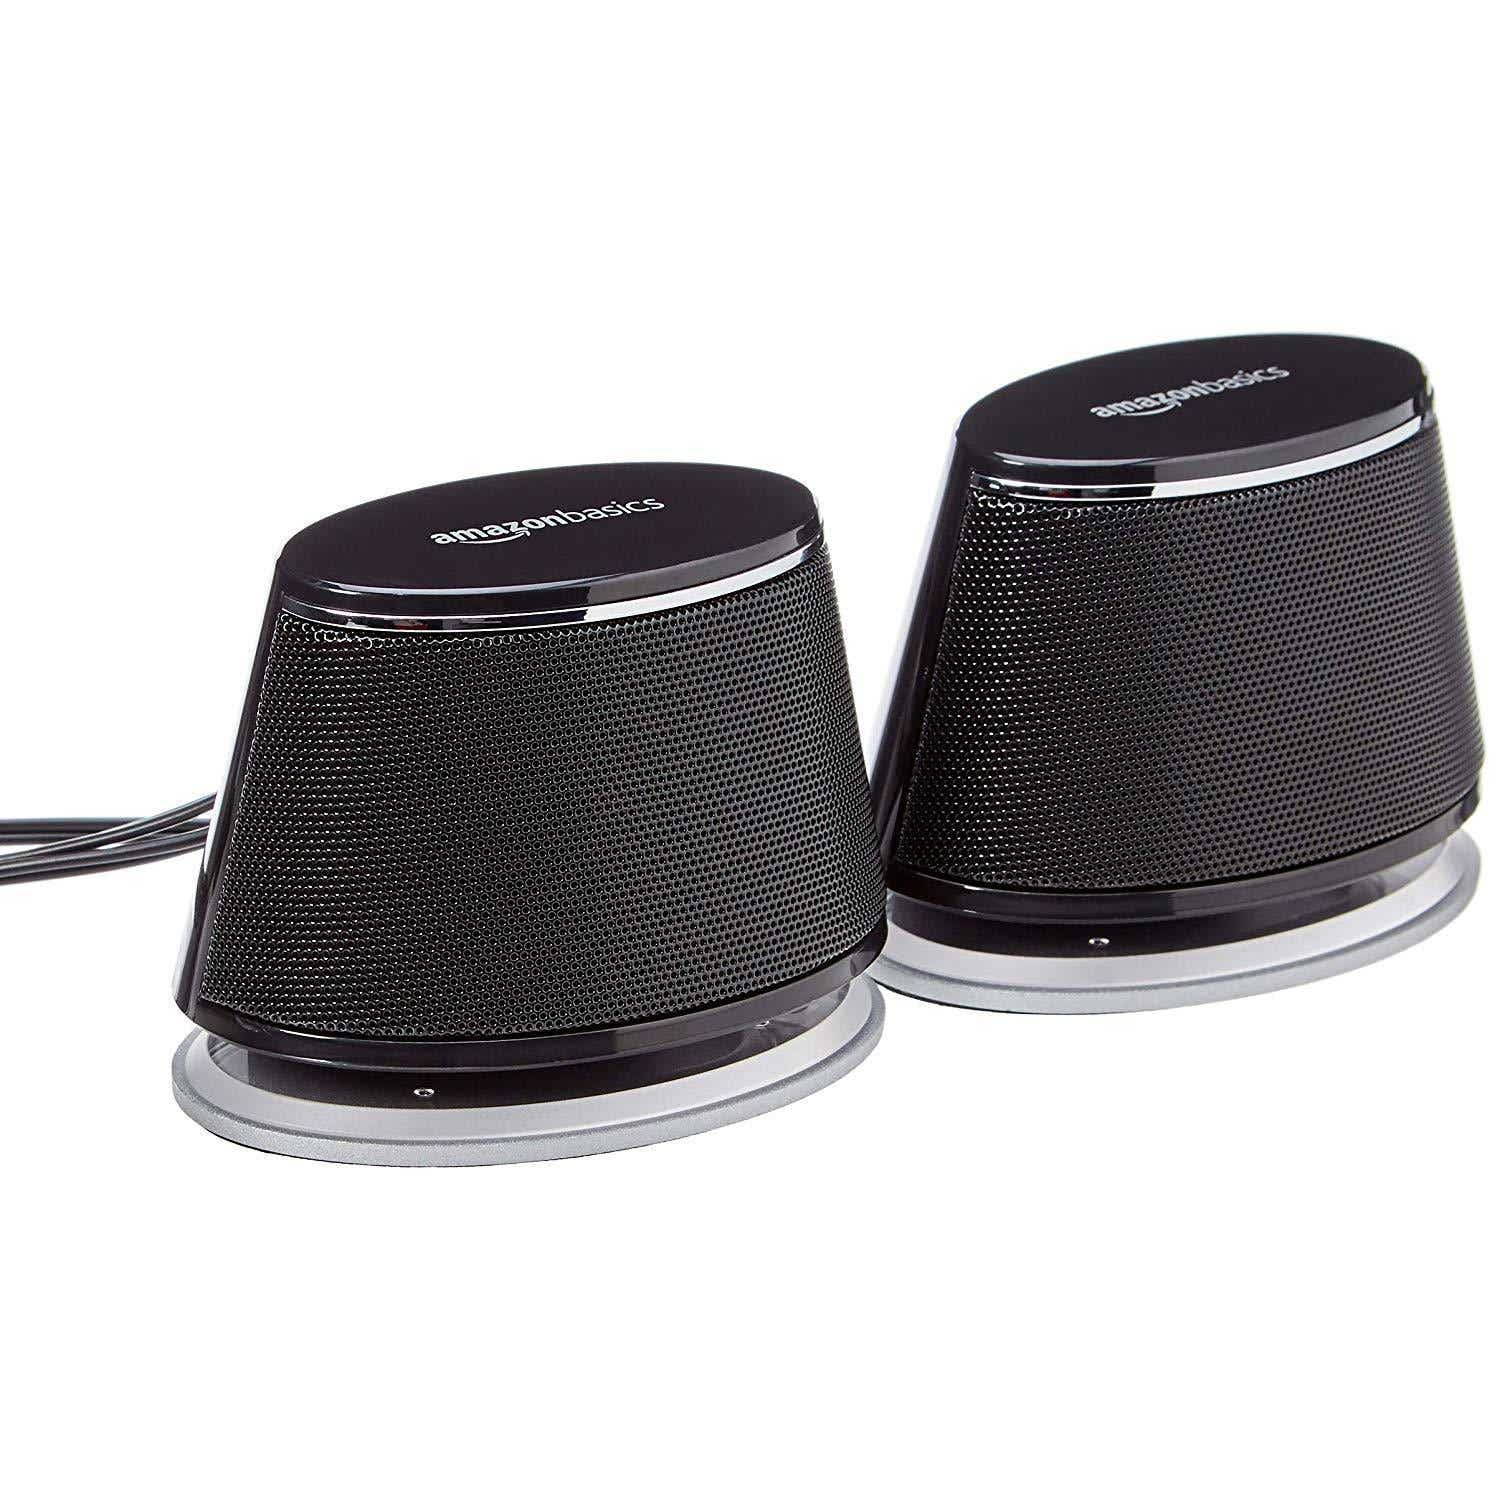 AmazonBasics USB-drevne computerhøjttalere med dynamisk lyd - Bedste snavs-billige mulighed